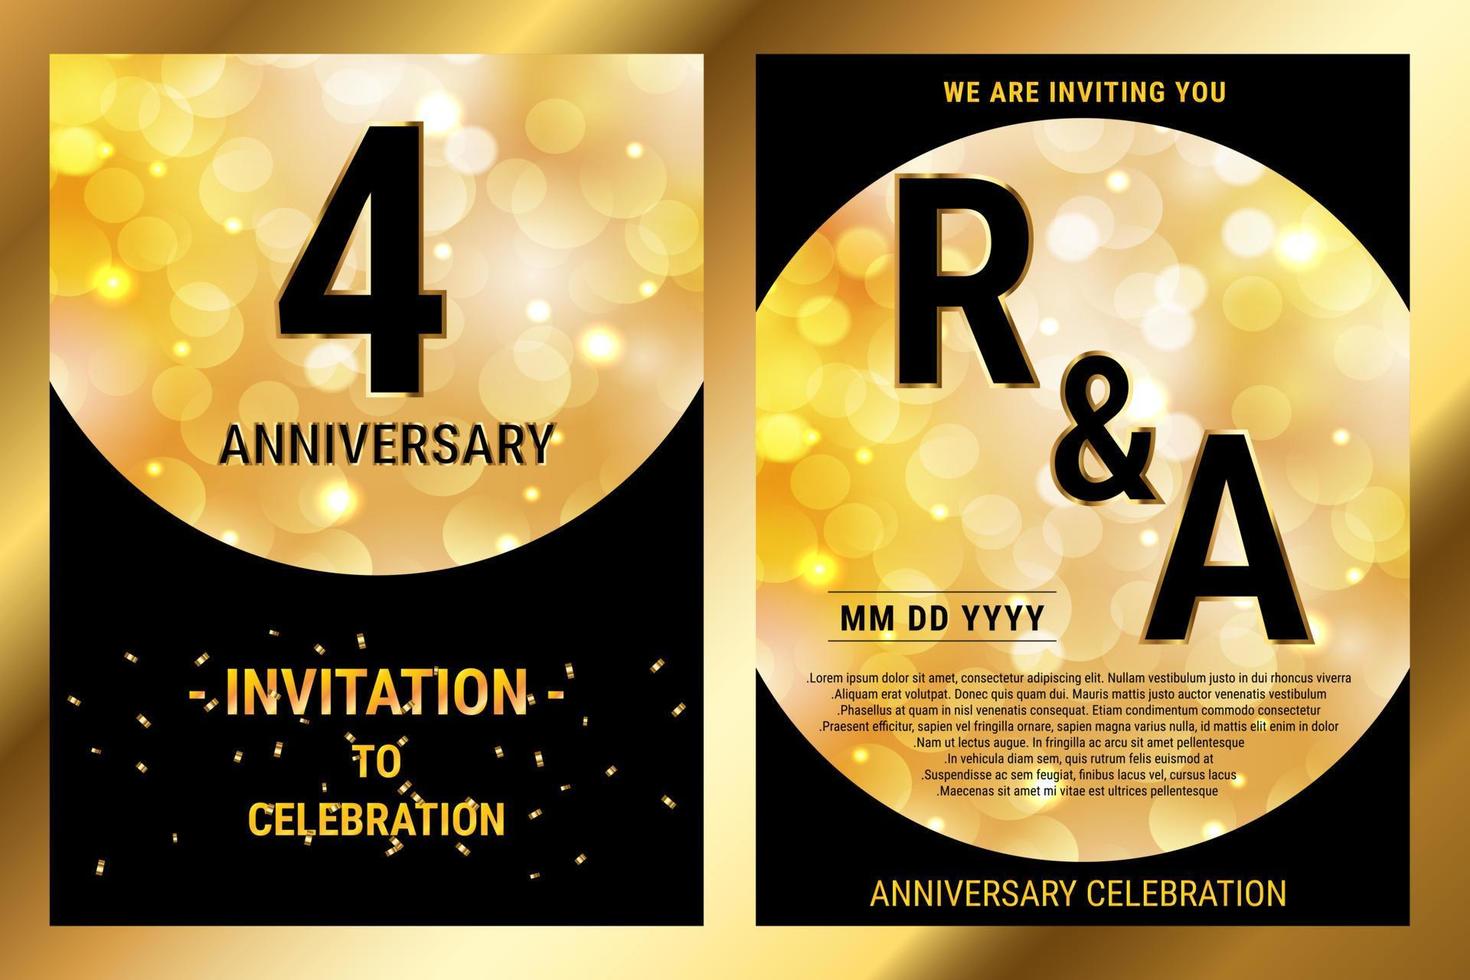 4e jaren verjaardag vector zwart papier luxe uitnodiging dubbele kaart. bruiloft verjaardag viering brochure. sjabloon van uitnodigend voor afdrukken hitam en goud achtergrond